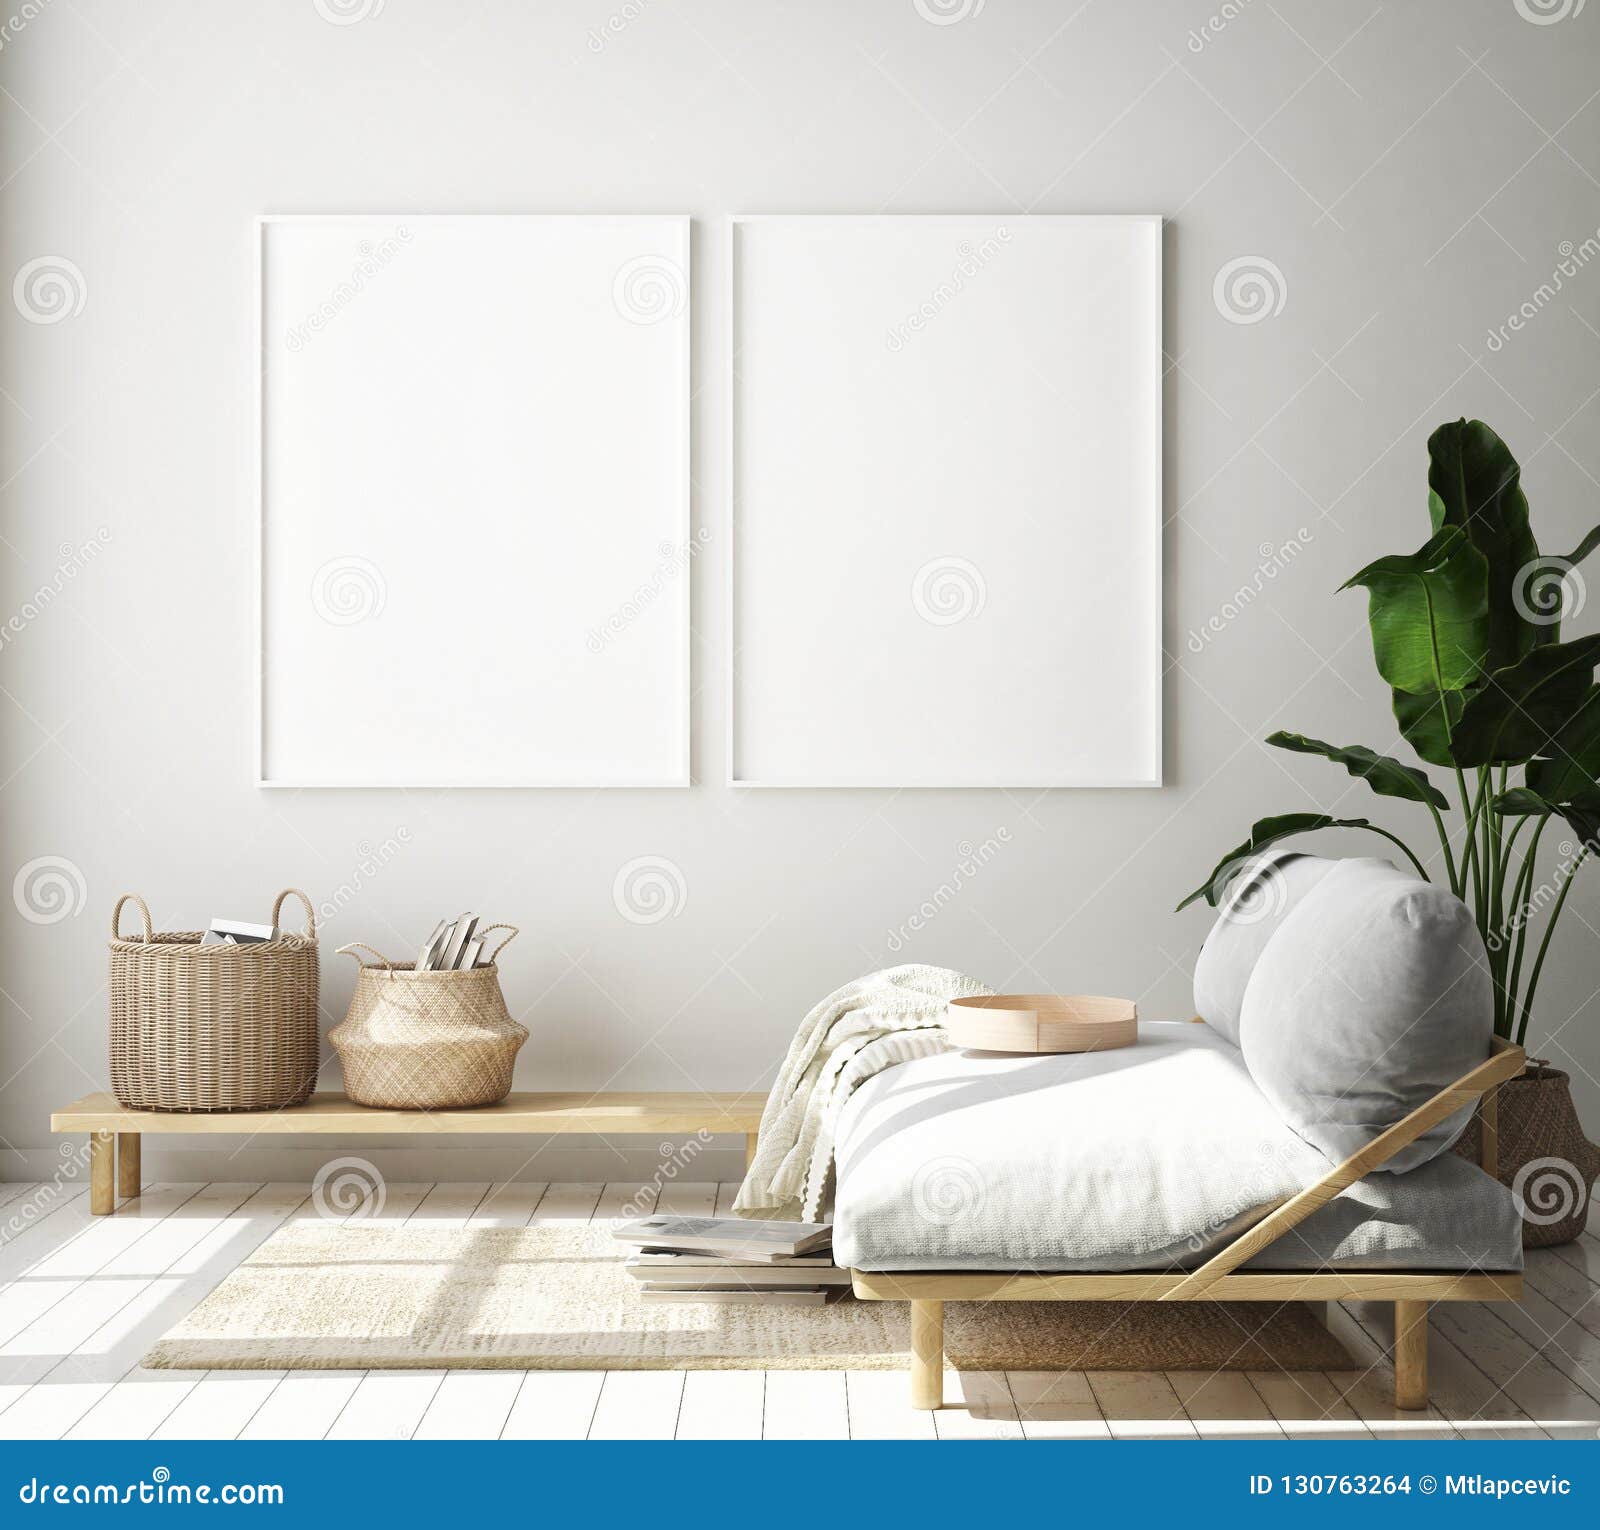 mock up poster frame in hipster interior background, living room,scandinavian style, 3d render, 3d 